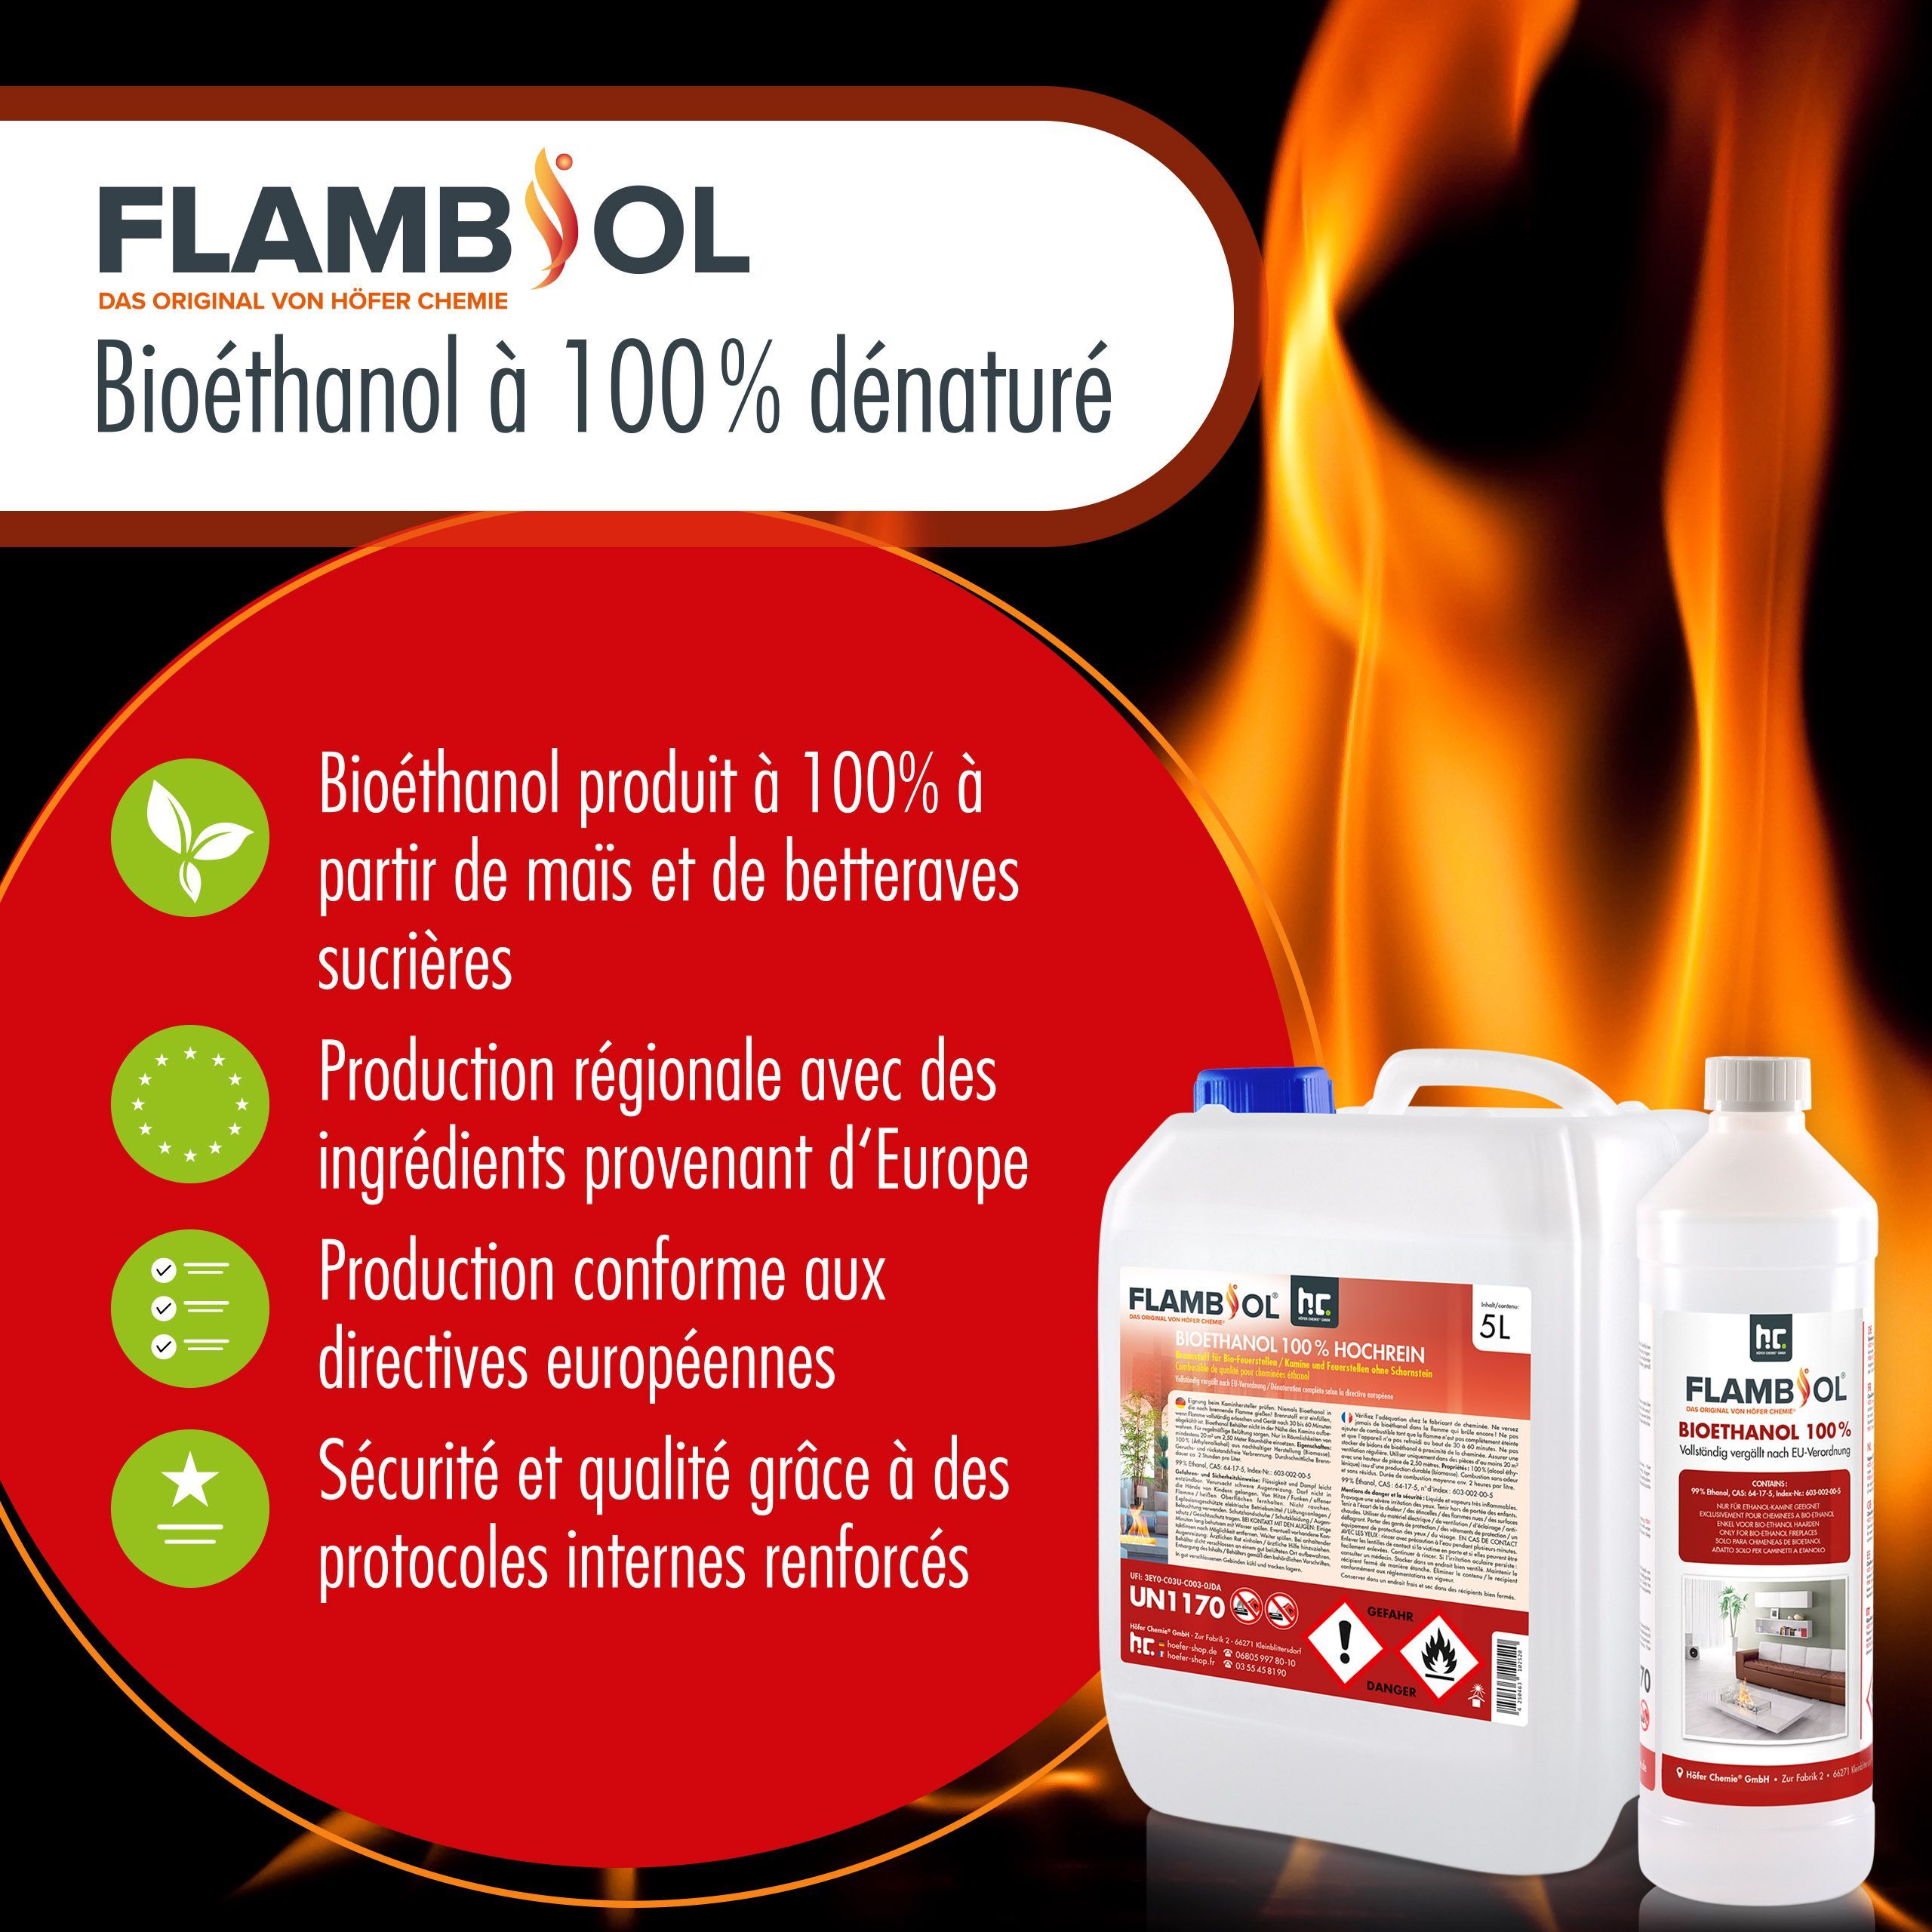 10 L FLAMBIOL® Bioethanol 100% Hochrein